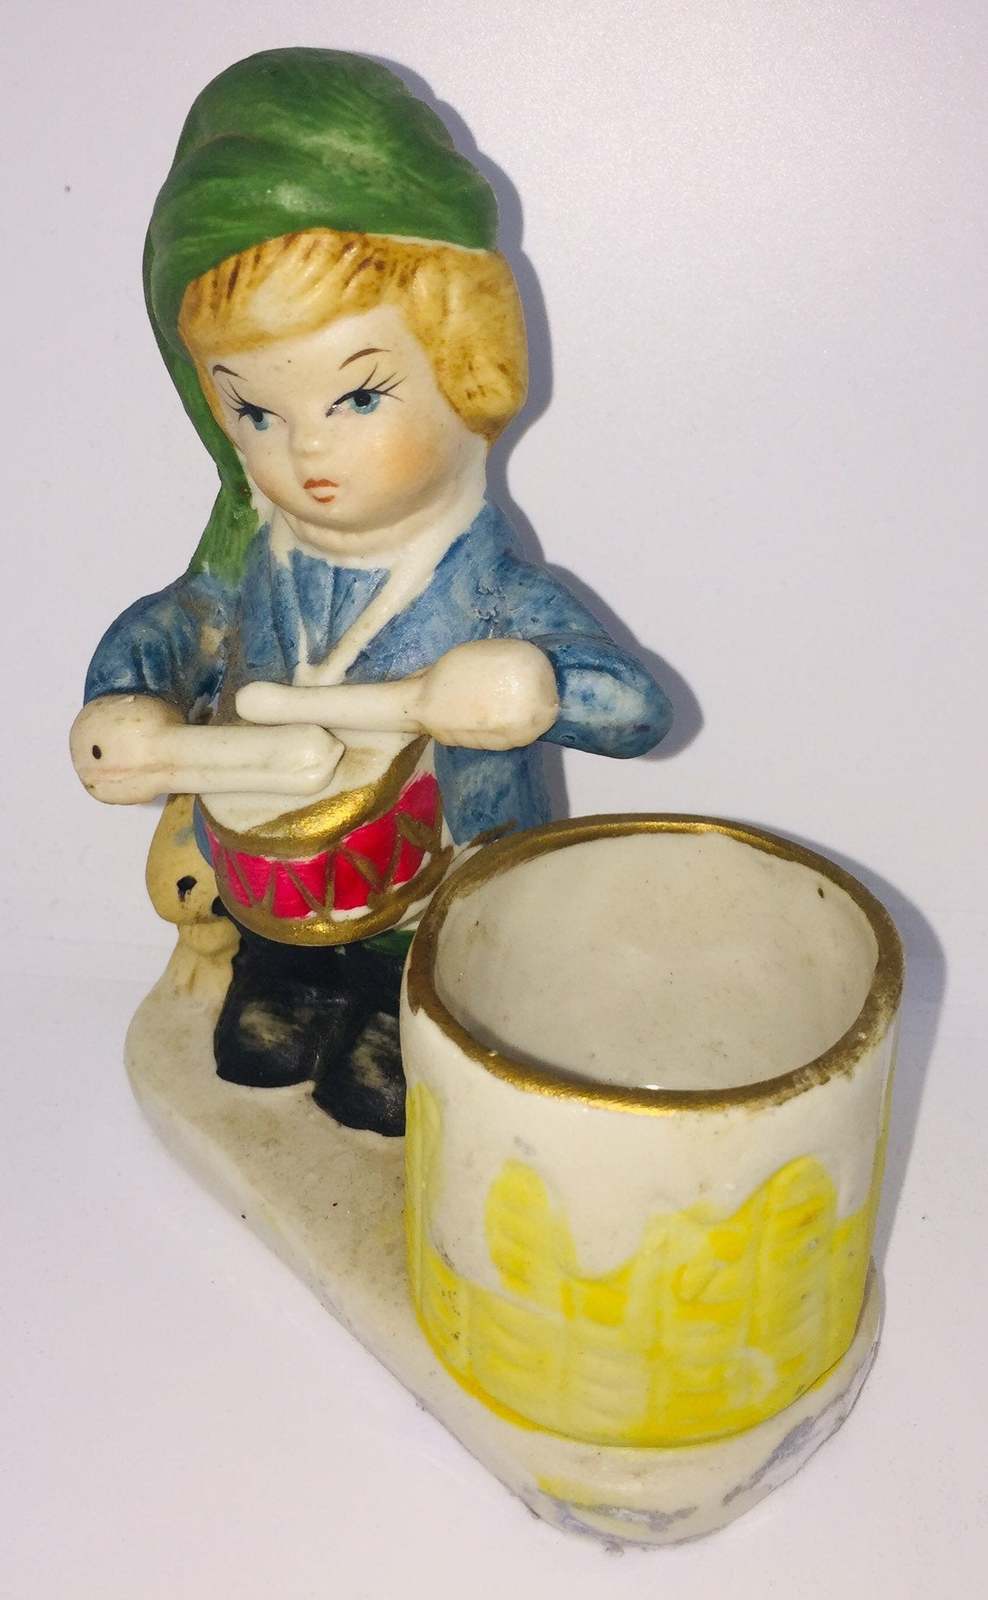 Vintage Christmas Luvkins Little Drummer Boy Candle Holder - $21.99